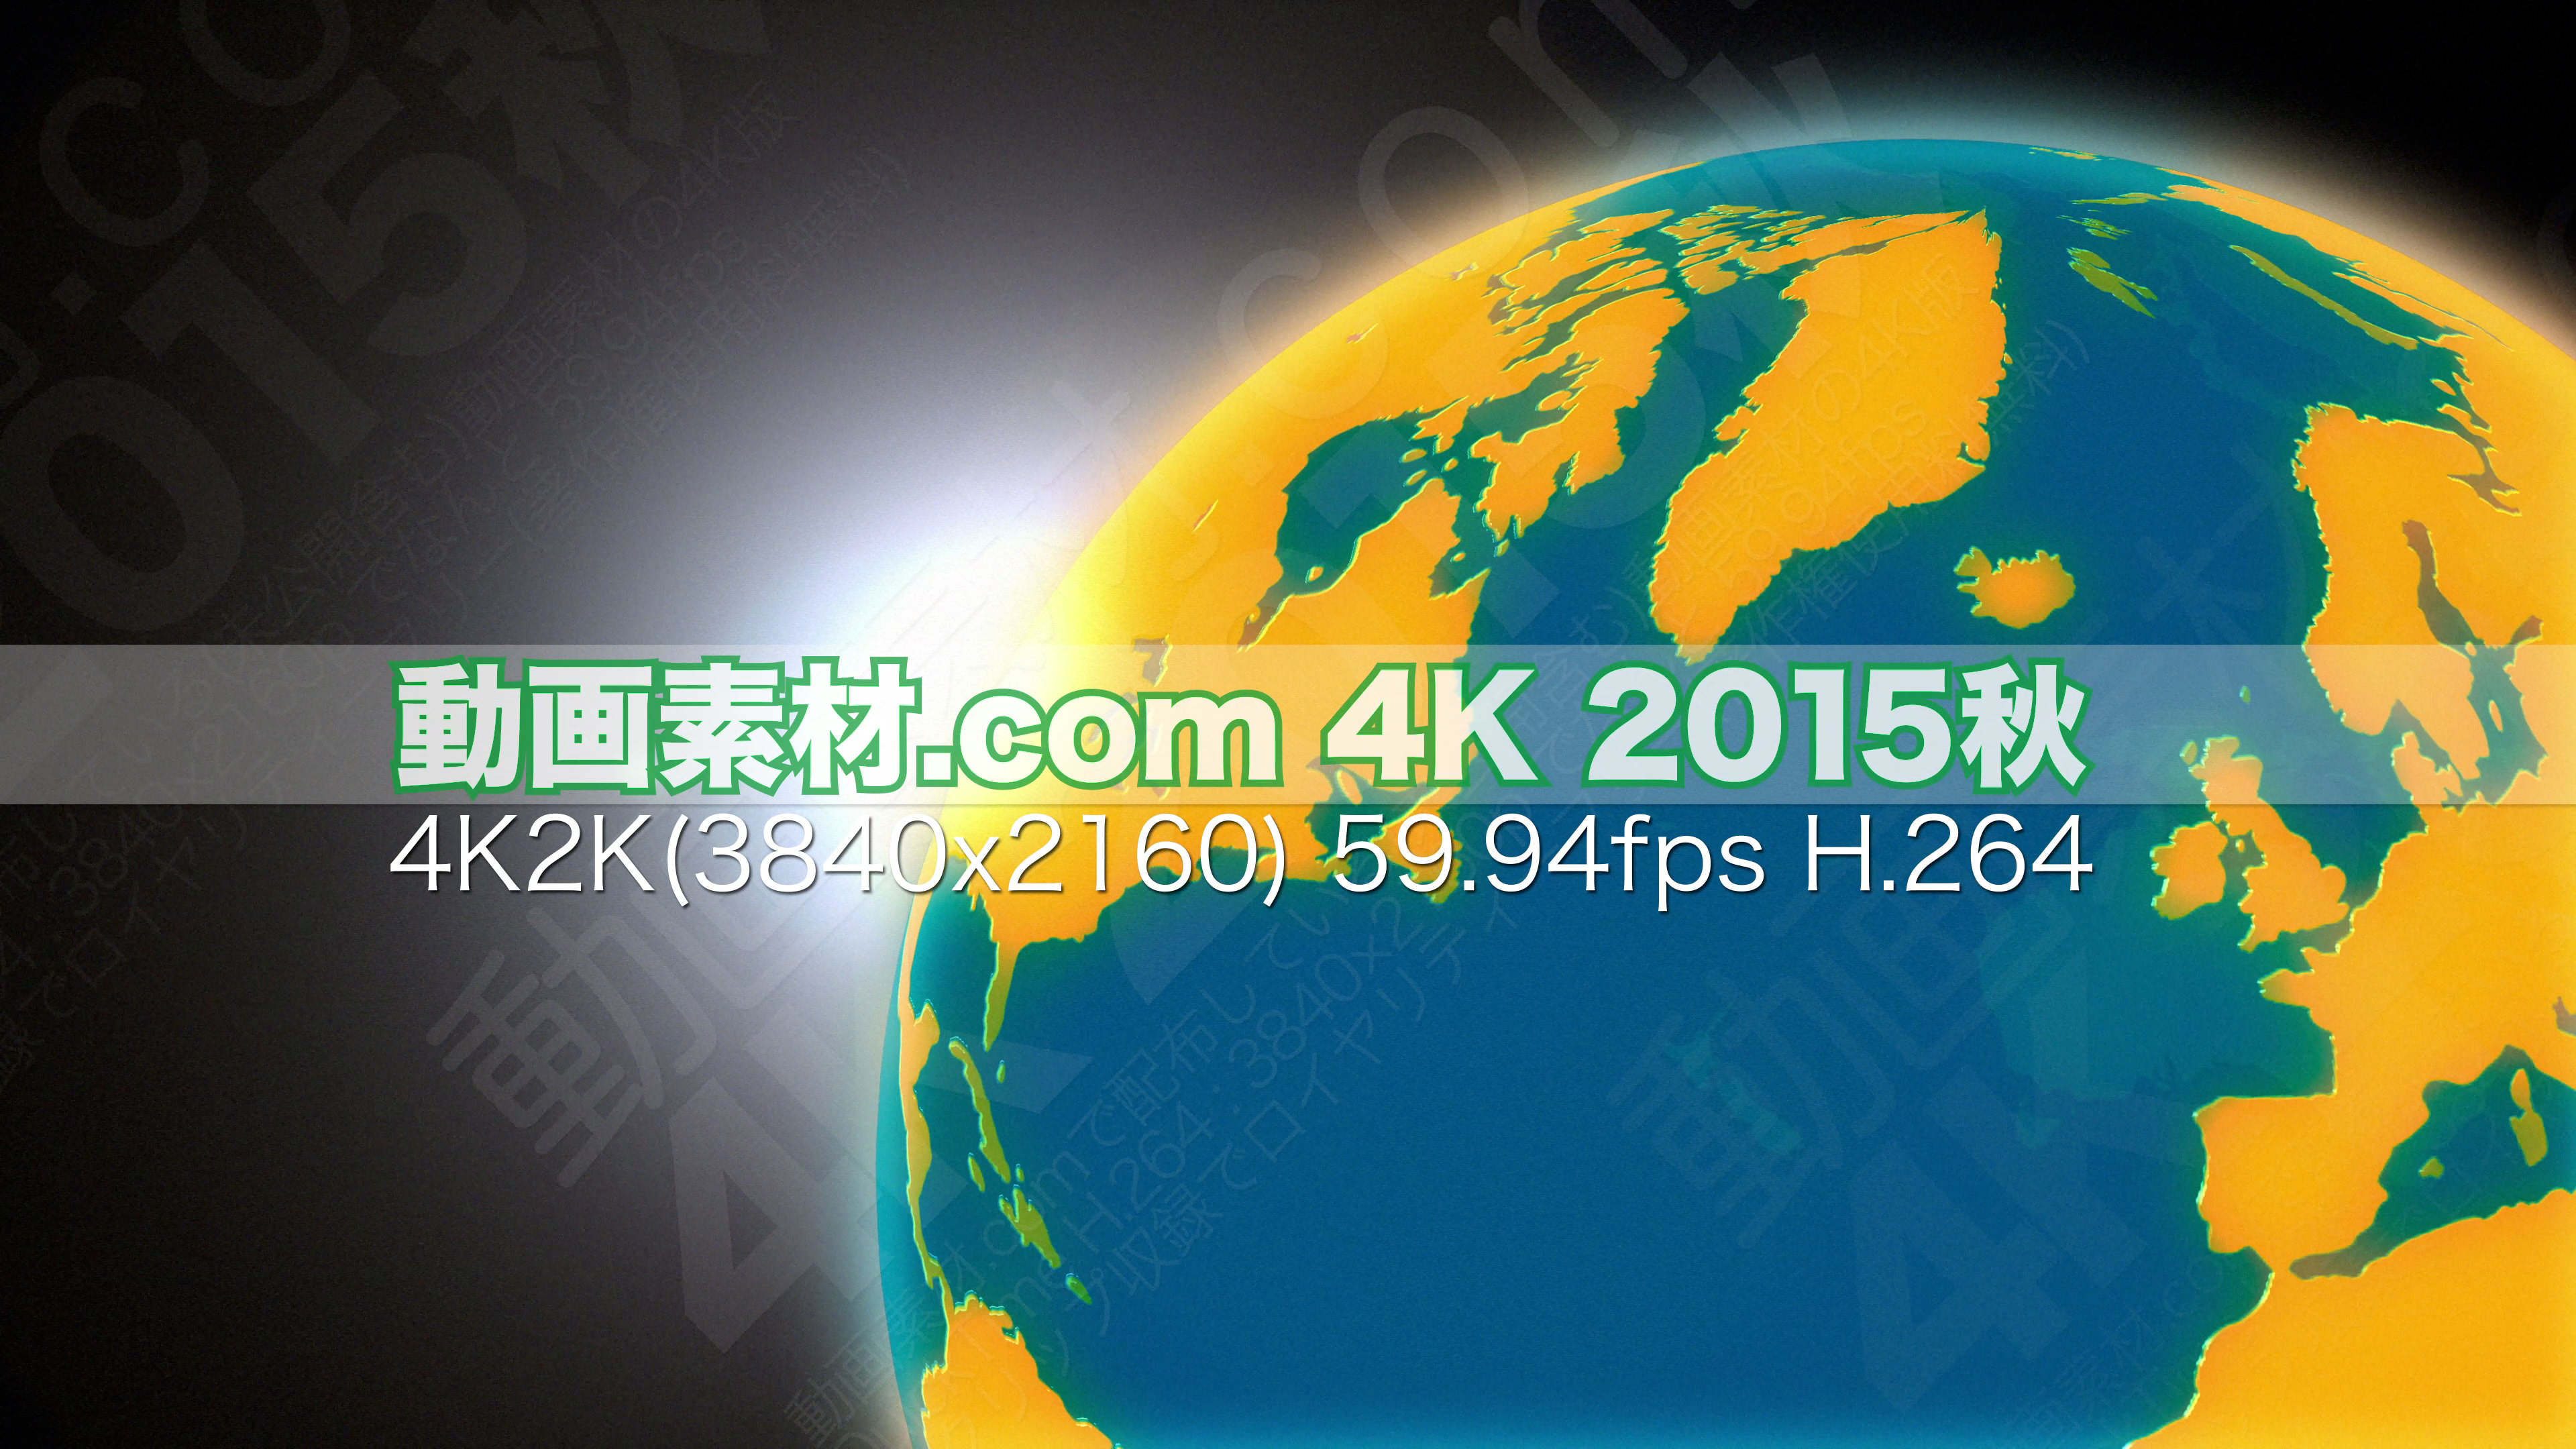 動画素材.com 4K 2015秋2 2160p 59.94fps